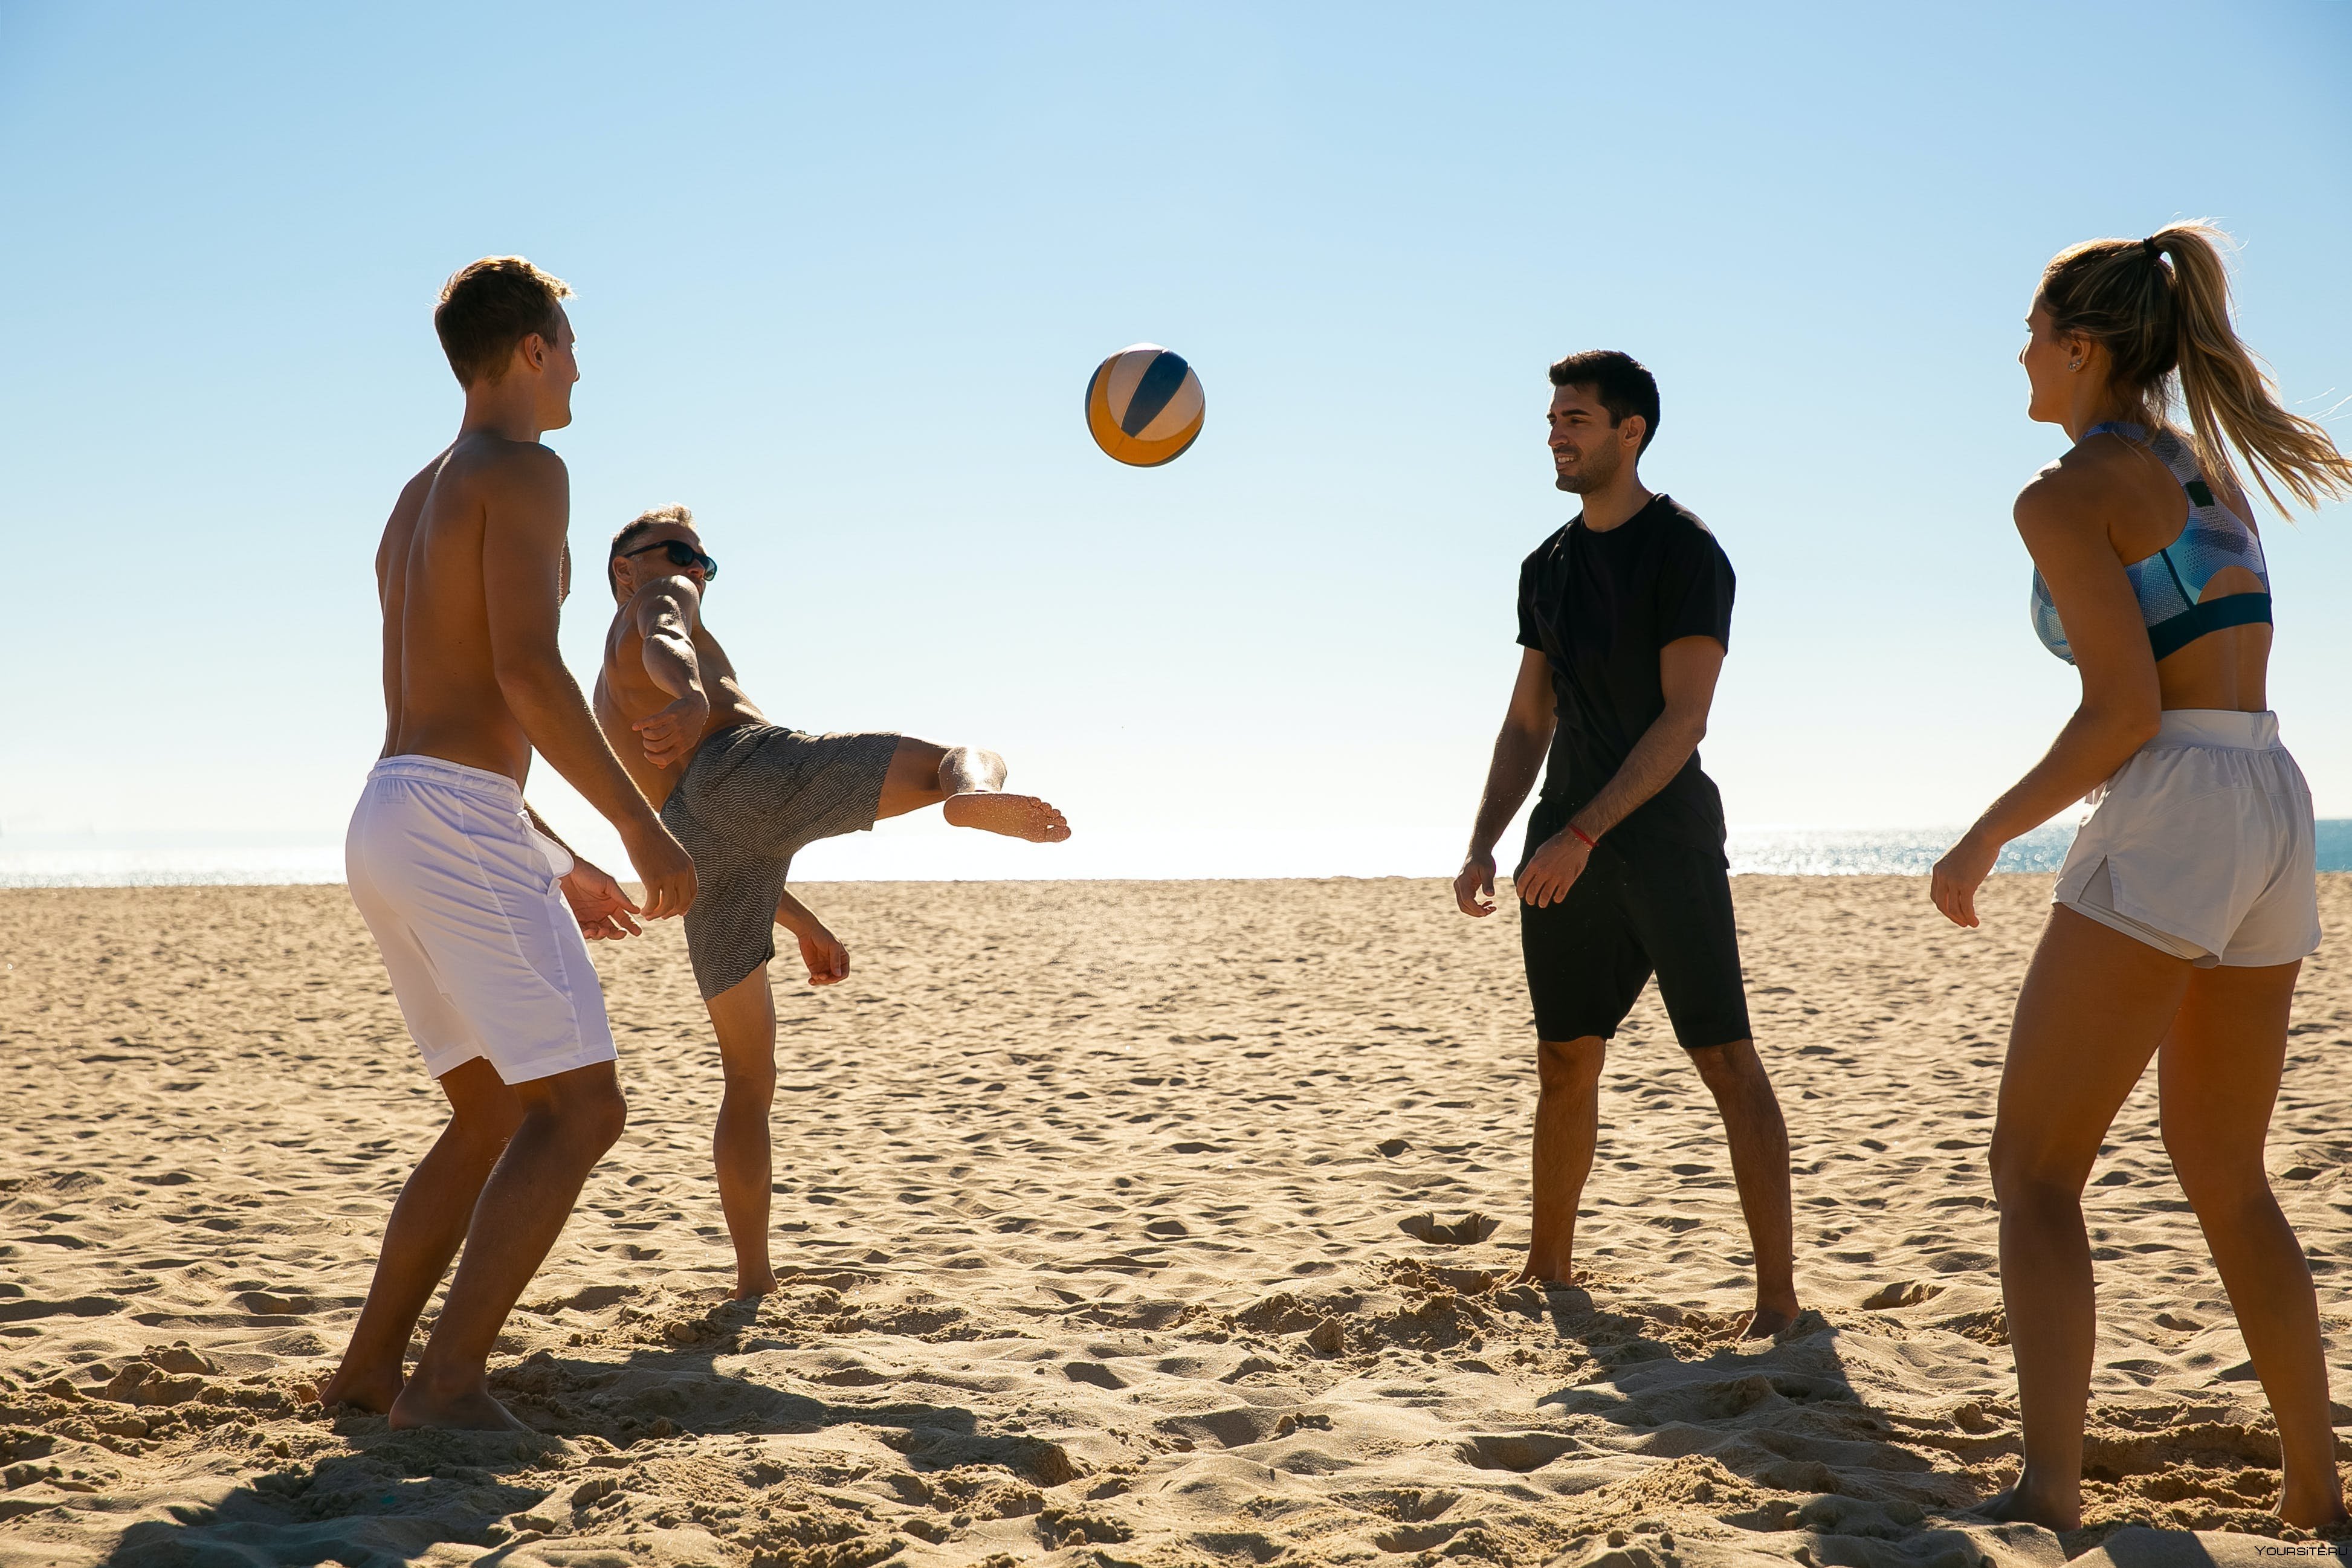 Мужчины играли в волейбол. Волейбол на пляже. Волейбол дети. Люди играющие на пляже. Пляжный волейбол.